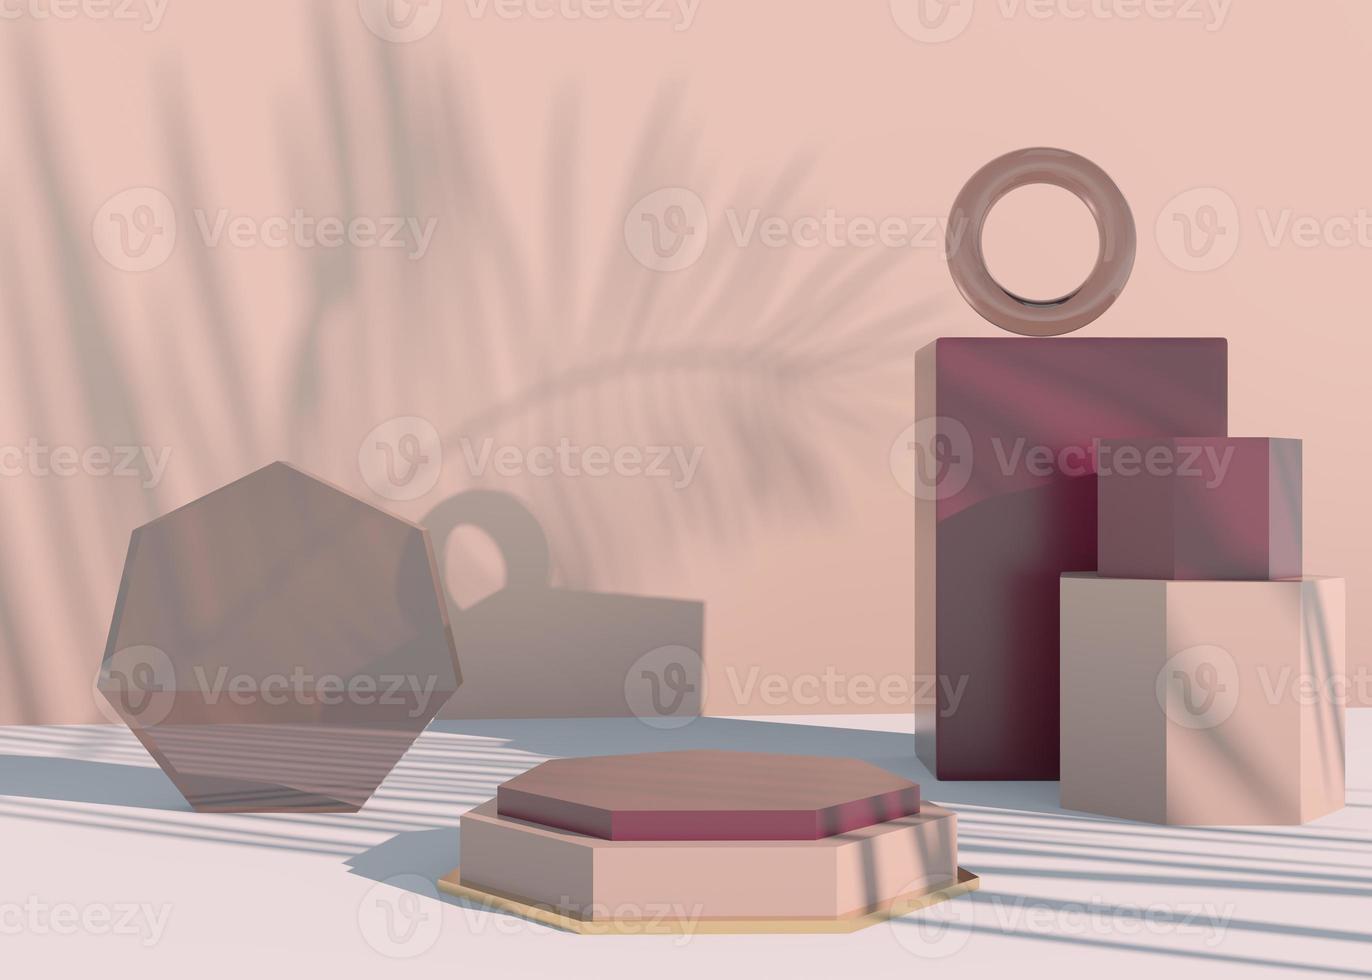 Podio con sombras de hojas de palma para presentación de productos cosméticos. maqueta de fondo de pedestal de escaparate vacío. Render 3D. foto